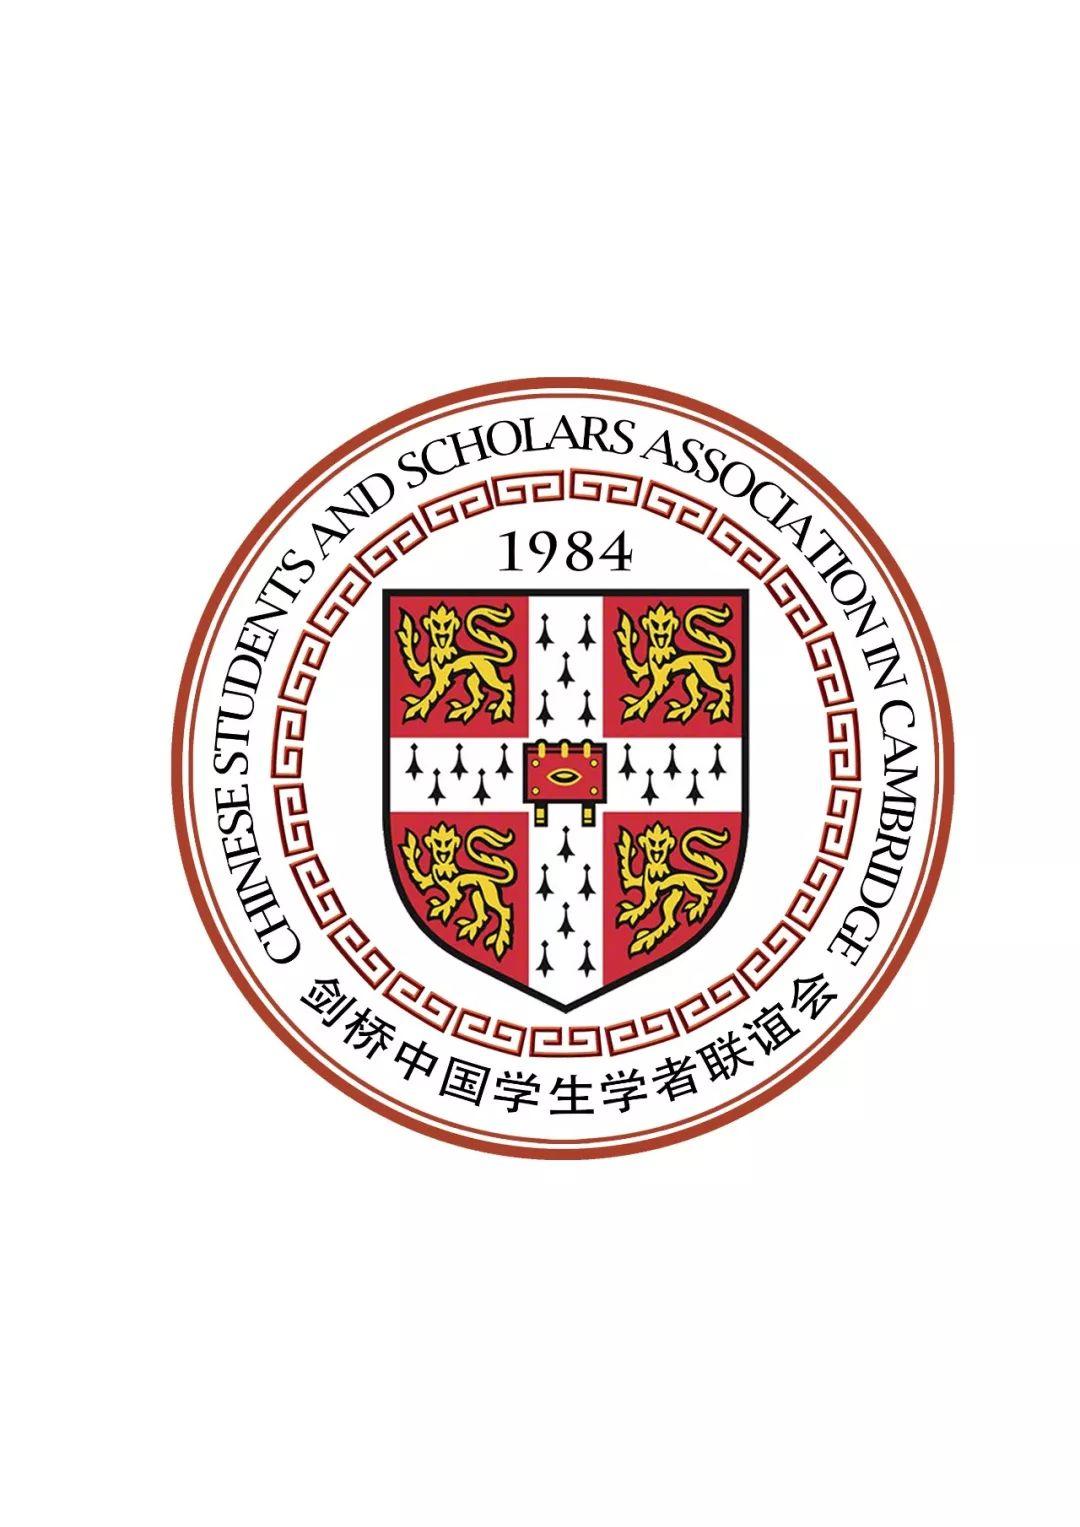 【2019剑桥学联新生周活动】Jesus College耶稣学院 古典式主题Formal